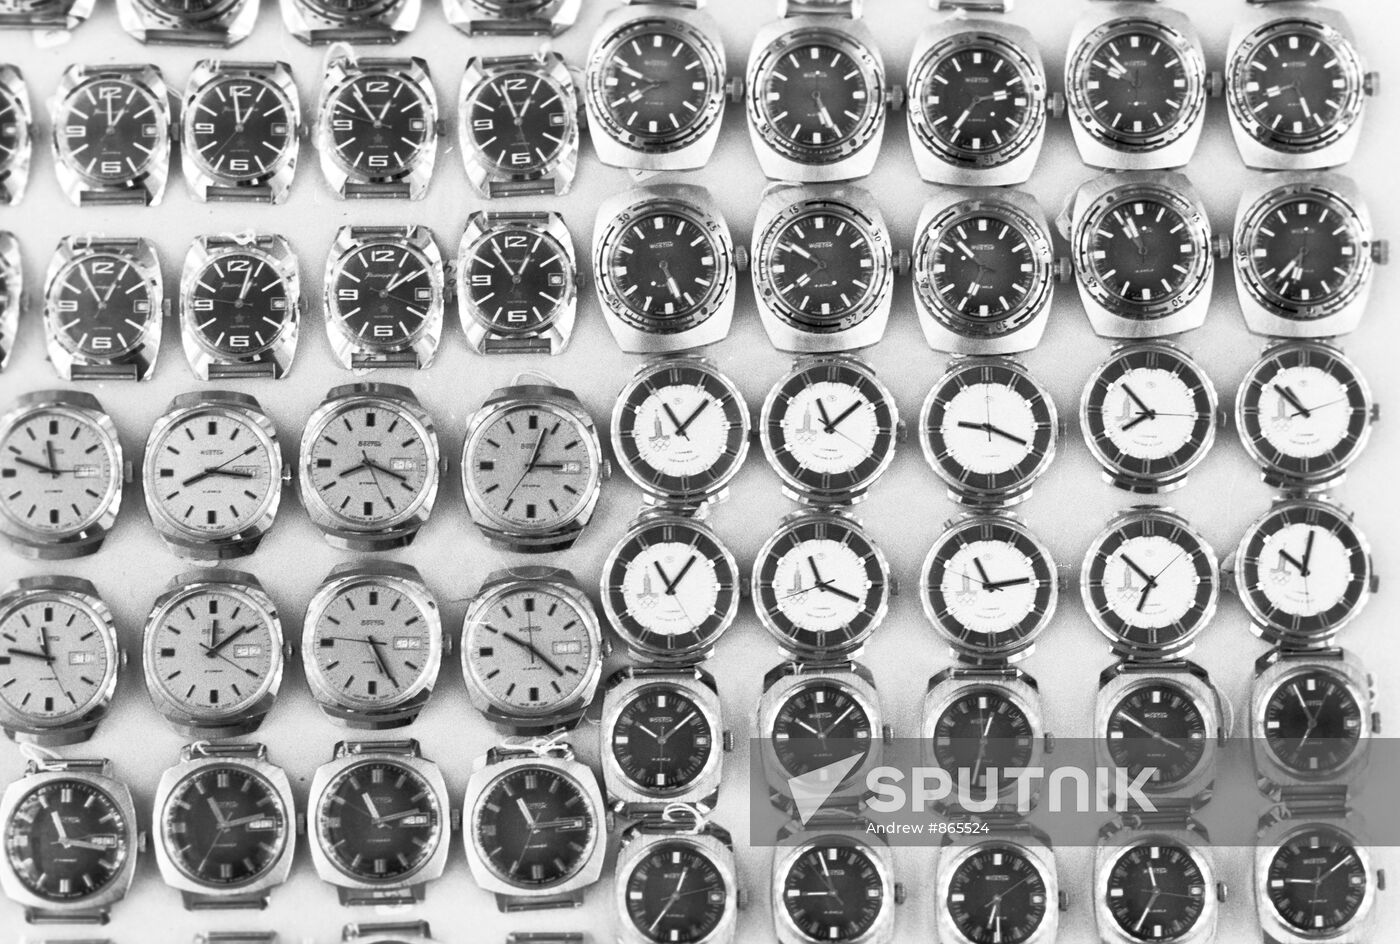 Vostok wrist watches